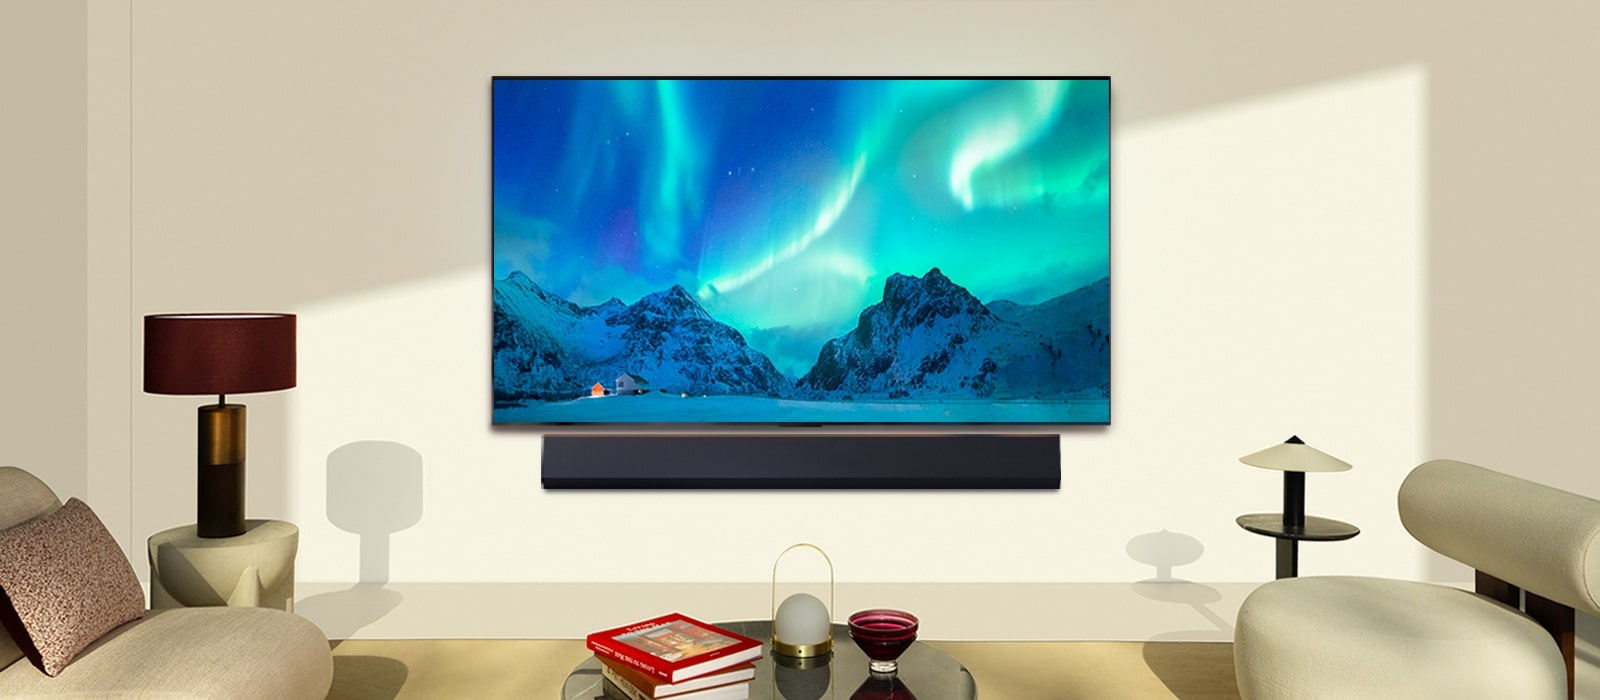 LG OLED TV et barre de son LG dans un espace de vie moderne en plein jour. L'image de l'aurore boréale est affichée avec les niveaux de luminosité idéaux.